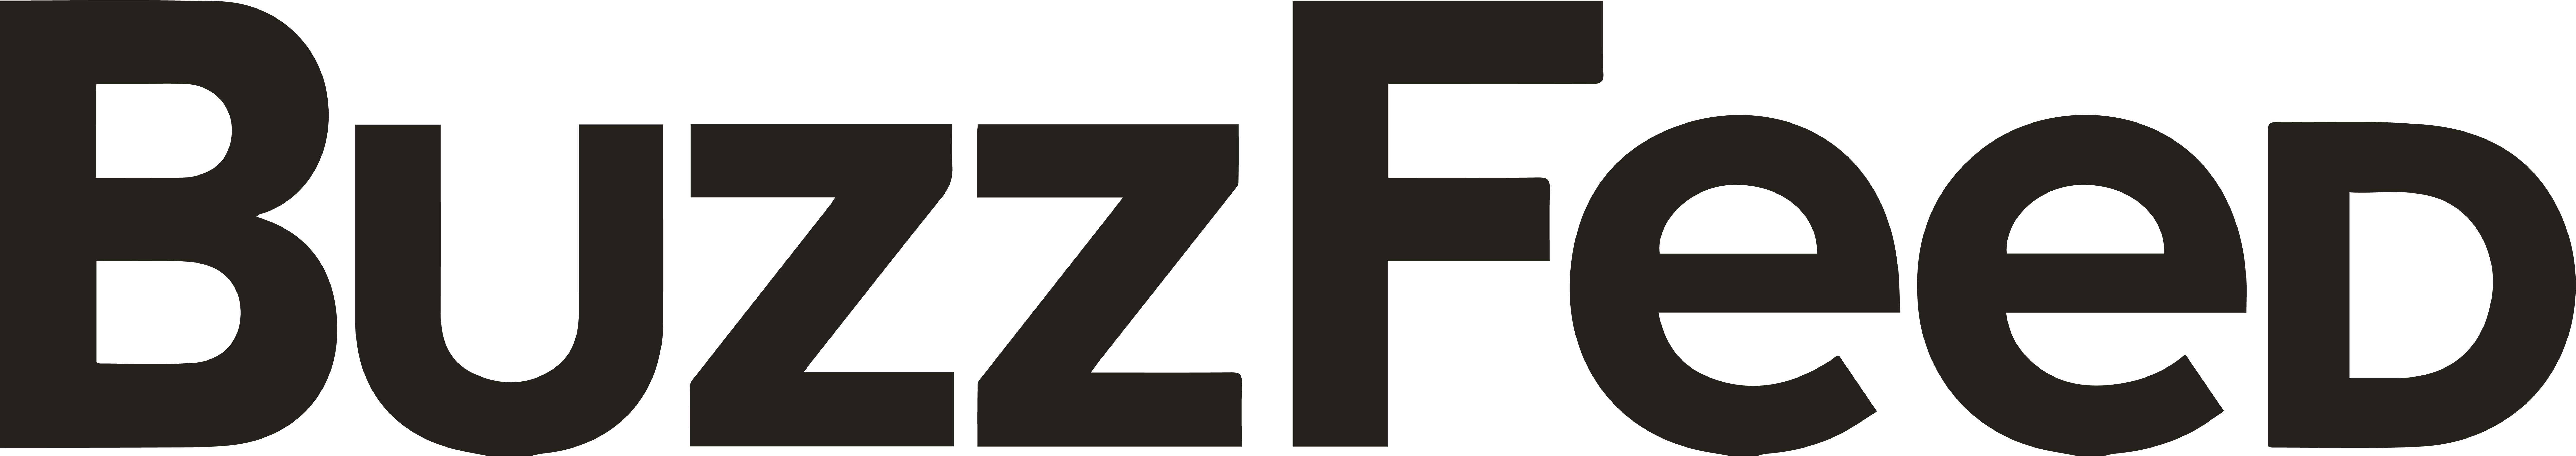 BuzzFeed brand logo